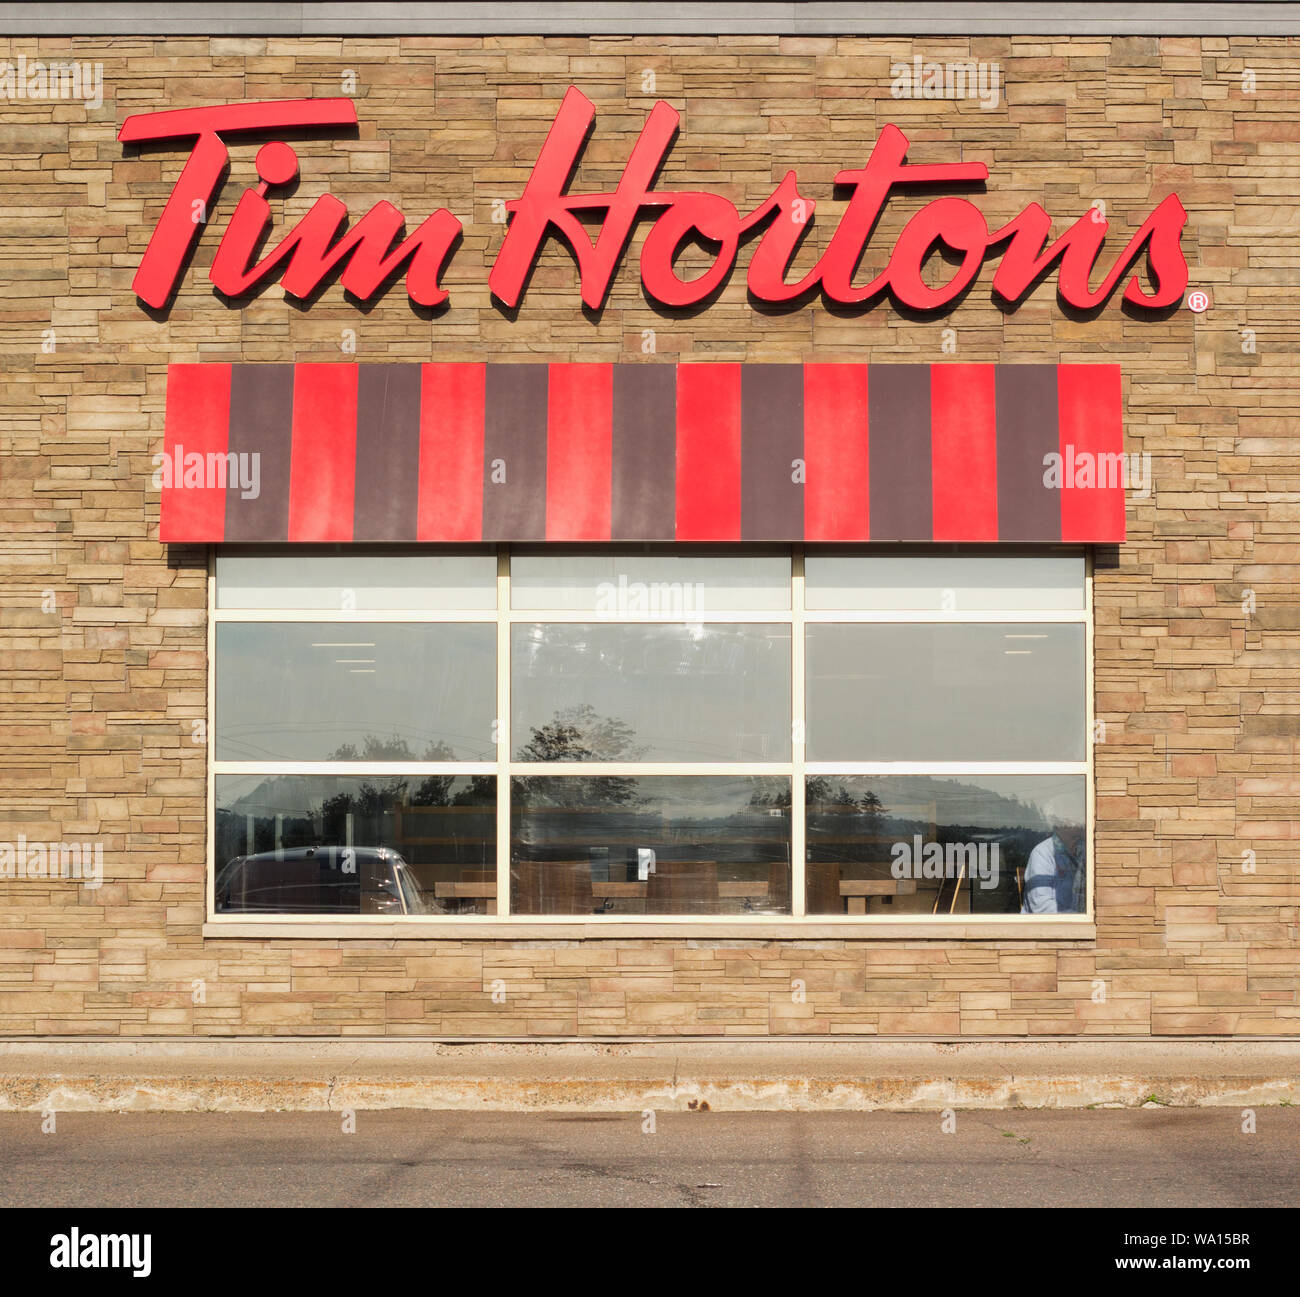 Truro, Canada - le 16 août 2019 : restaurant Tim Hortons. Tim Hortons est une chaîne de restaurants canadienne connue pour son café et des beignes. Banque D'Images